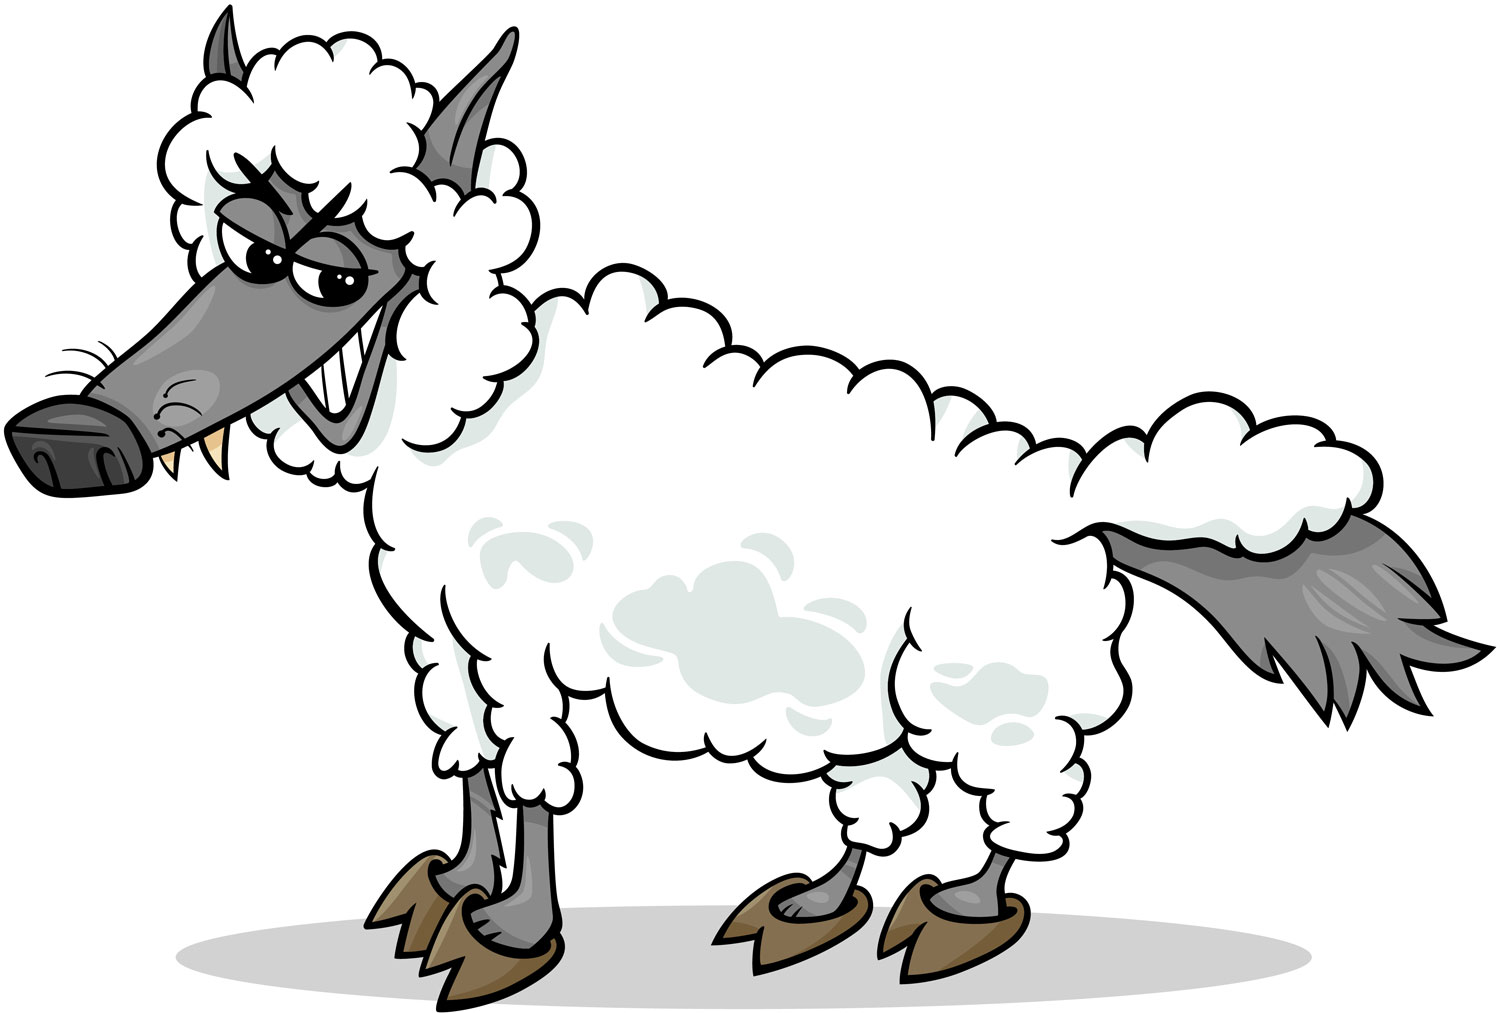 Teckning av varg utklädd till får.